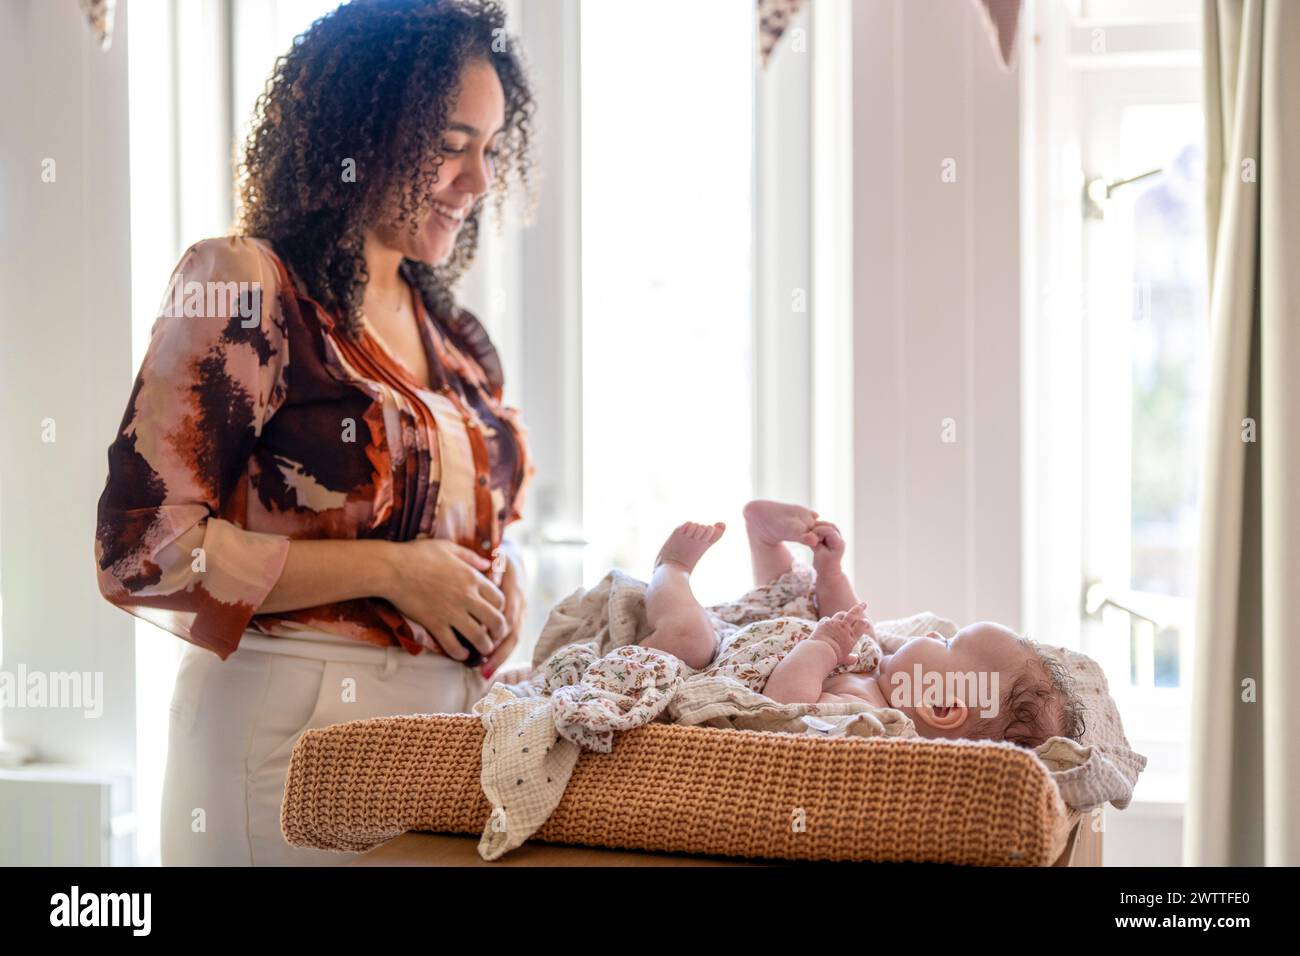 Eine lächelnde Frau, die an einem Fenster steht, berührt sanft ein Baby, das in einer gemütlichen Wanne liegt. Stockfoto